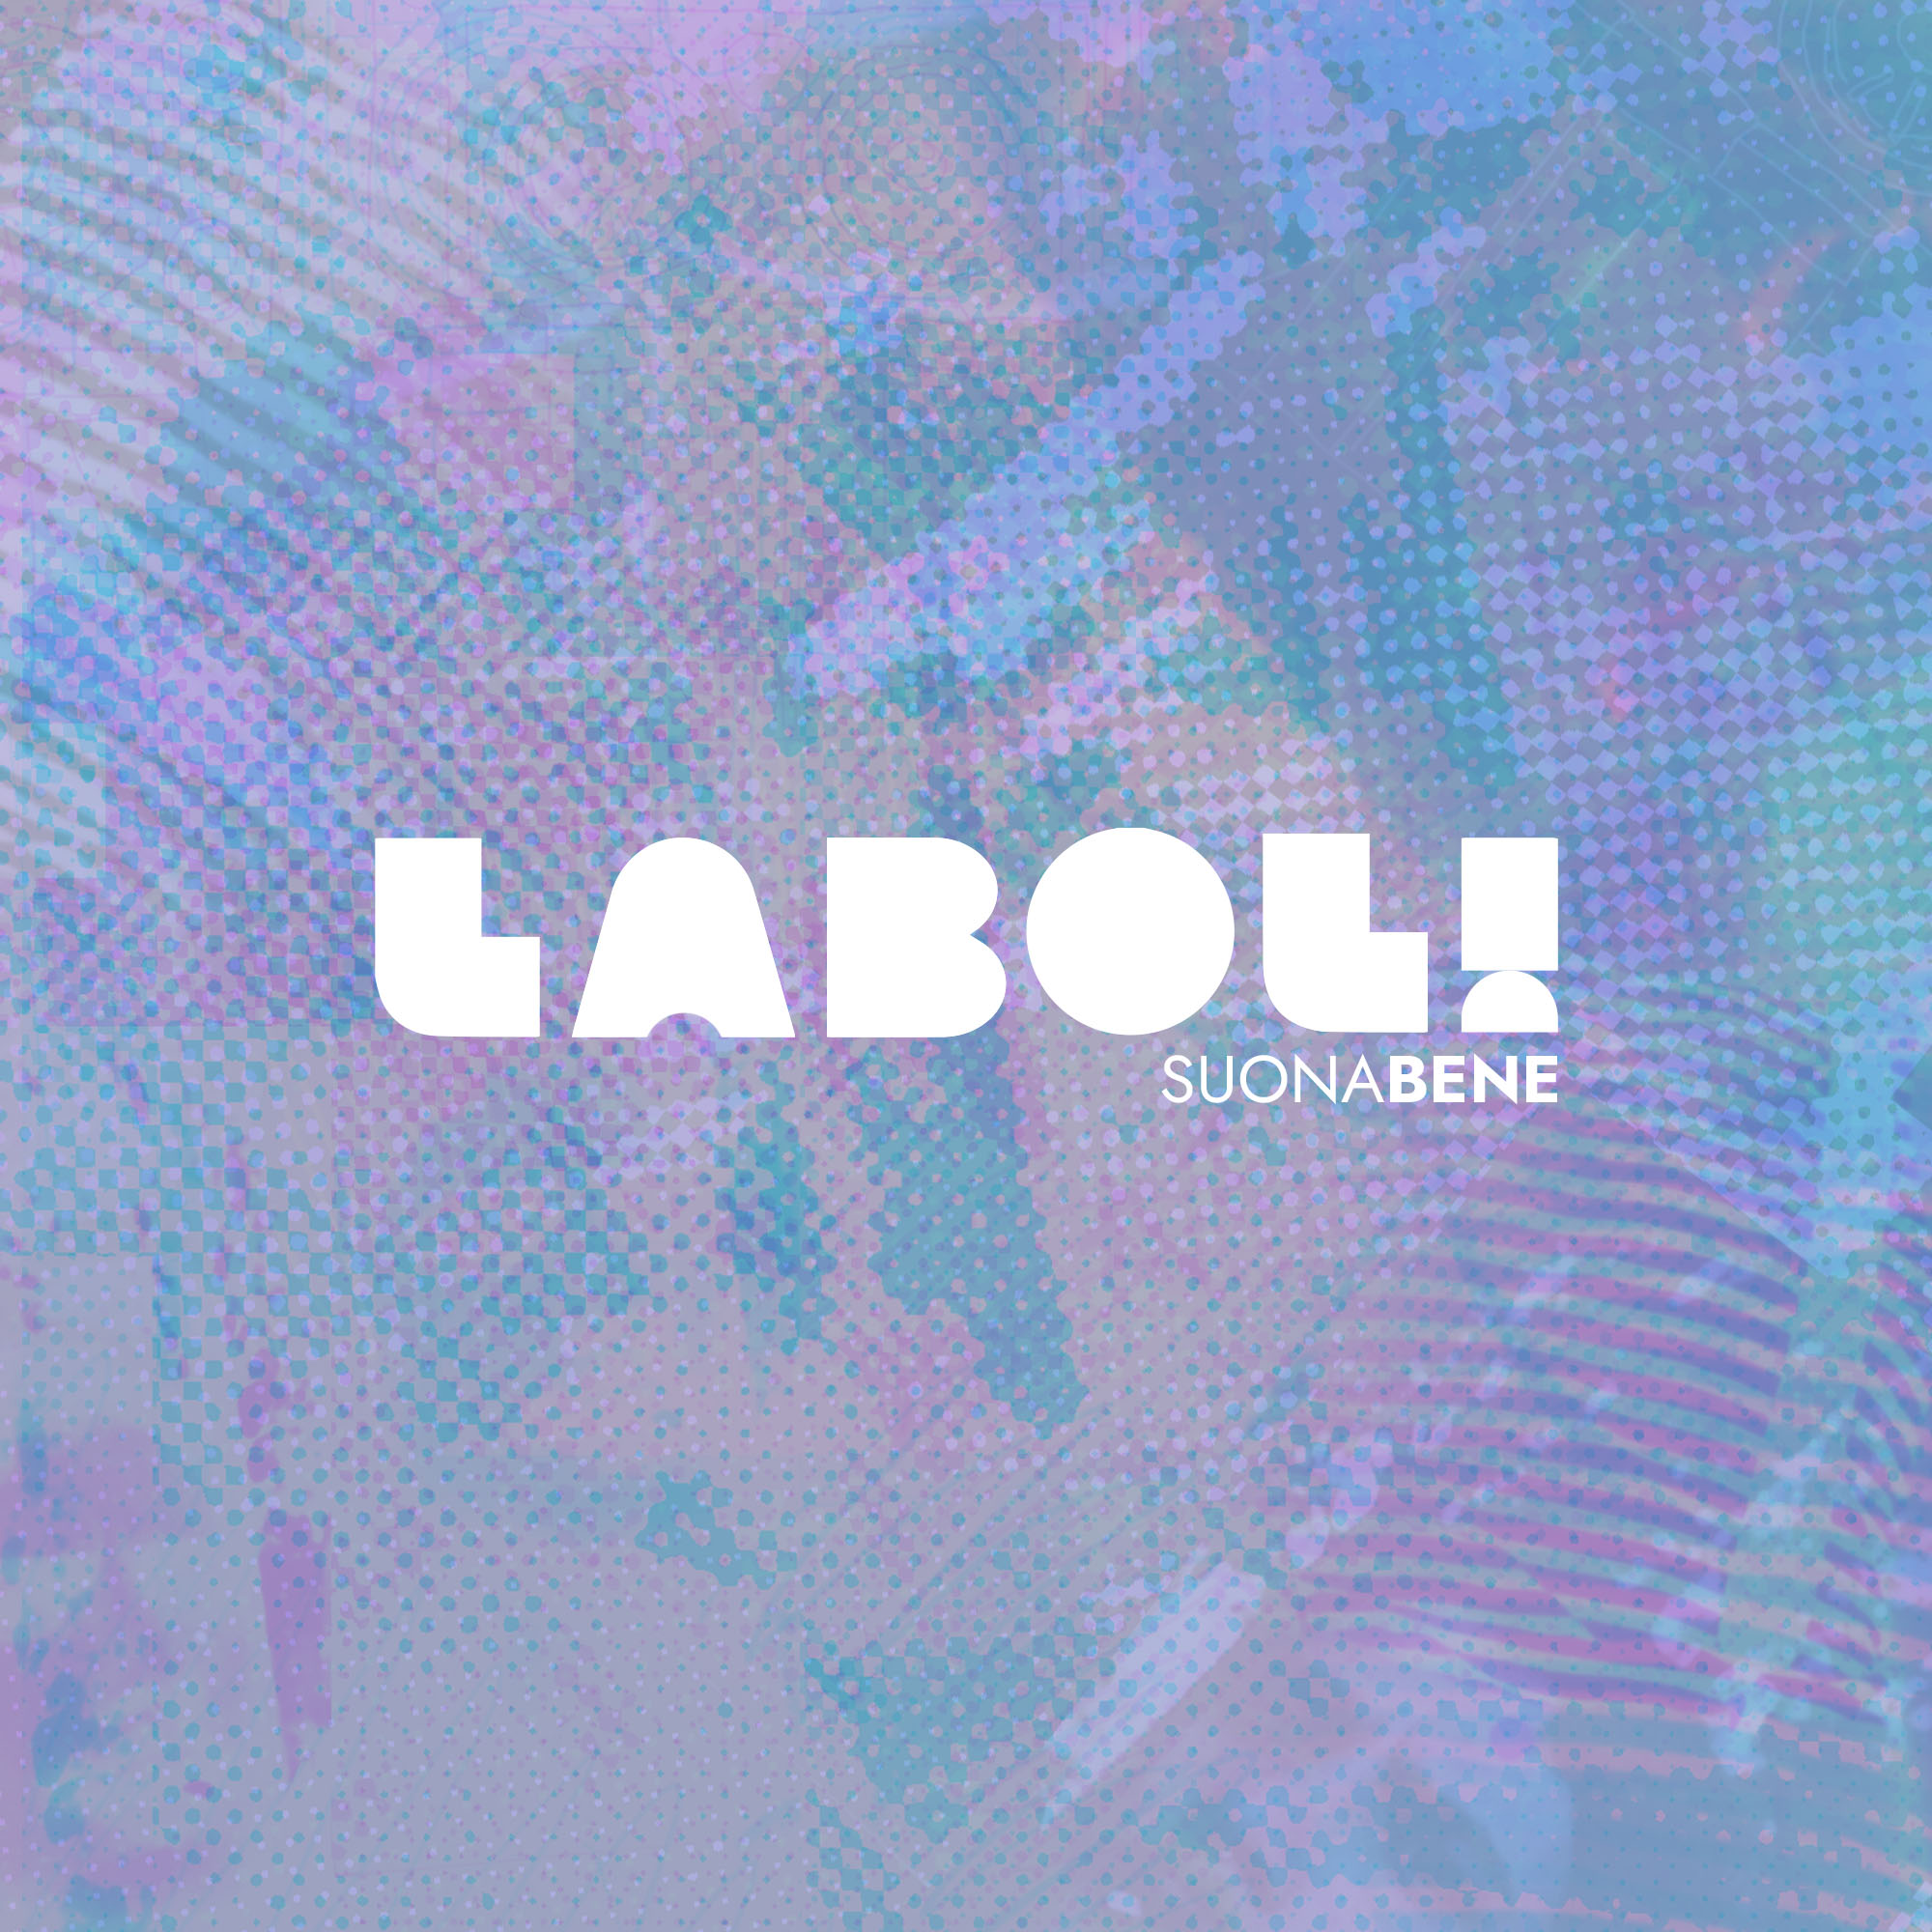 LABOL! suona bene LOGO design etichetta discografica musica